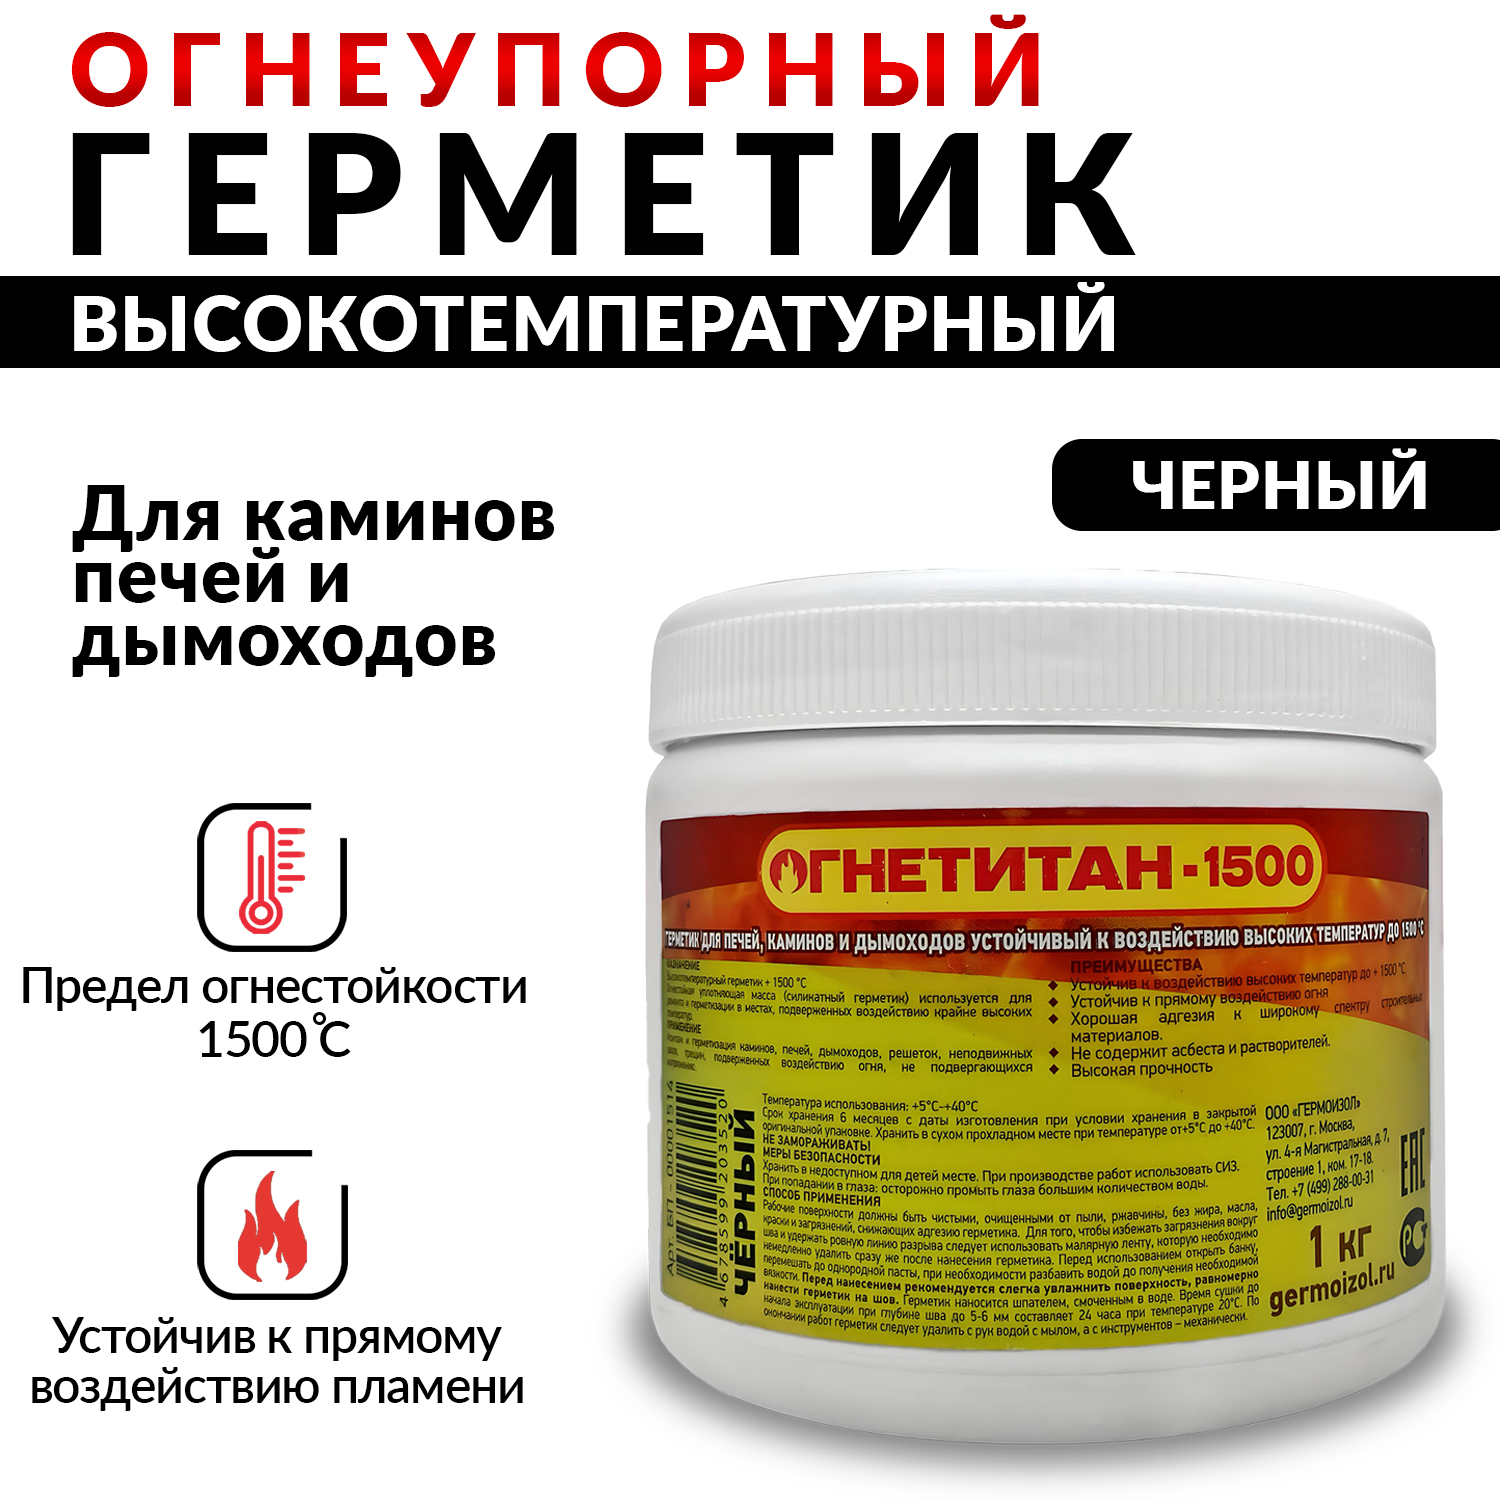 Герметик ОГНЕТИТАН-1500 высокотемпературный огнеупорный герметик для печей и каминов1 кг